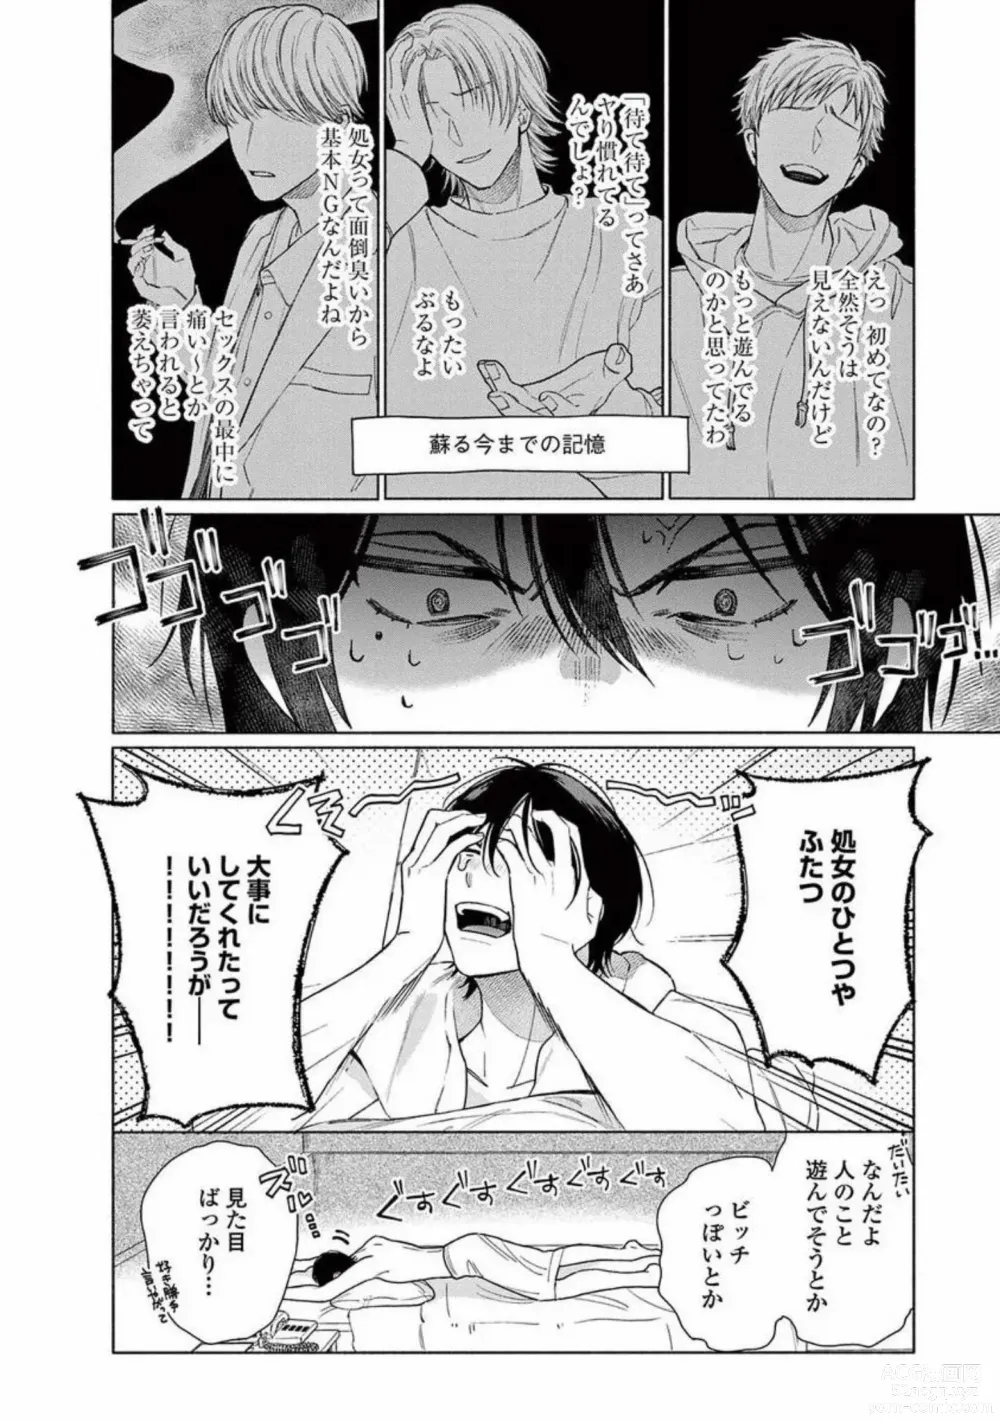 Page 10 of manga Junjou de Nani ga Warui - Whats wrong with being innocent?